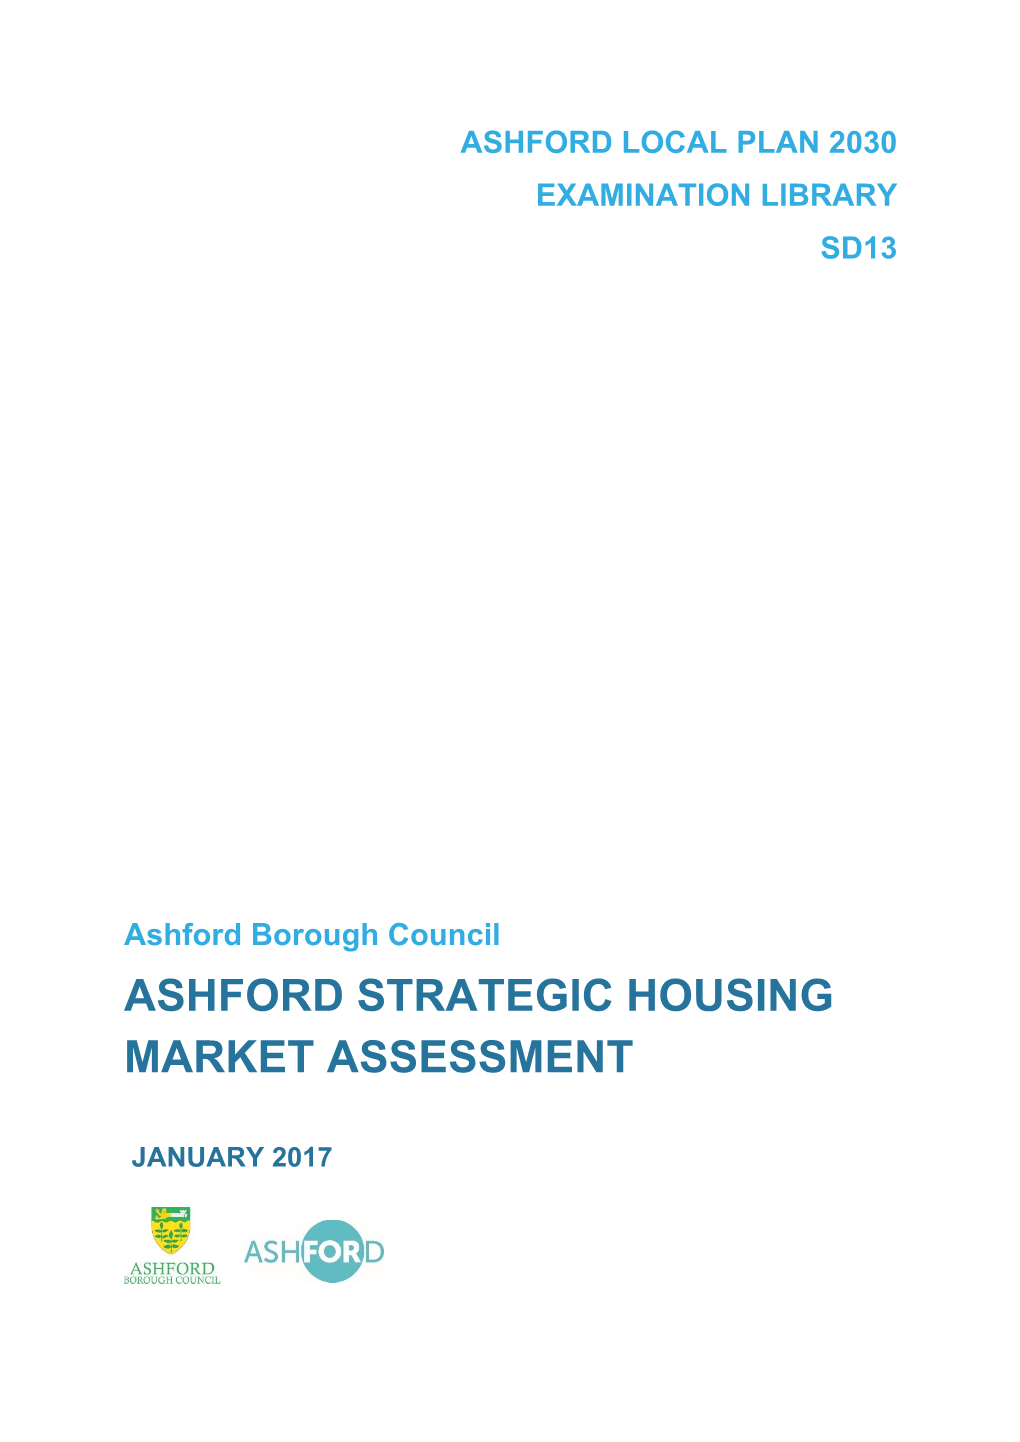 Ashford Strategic Housing Market Assessment